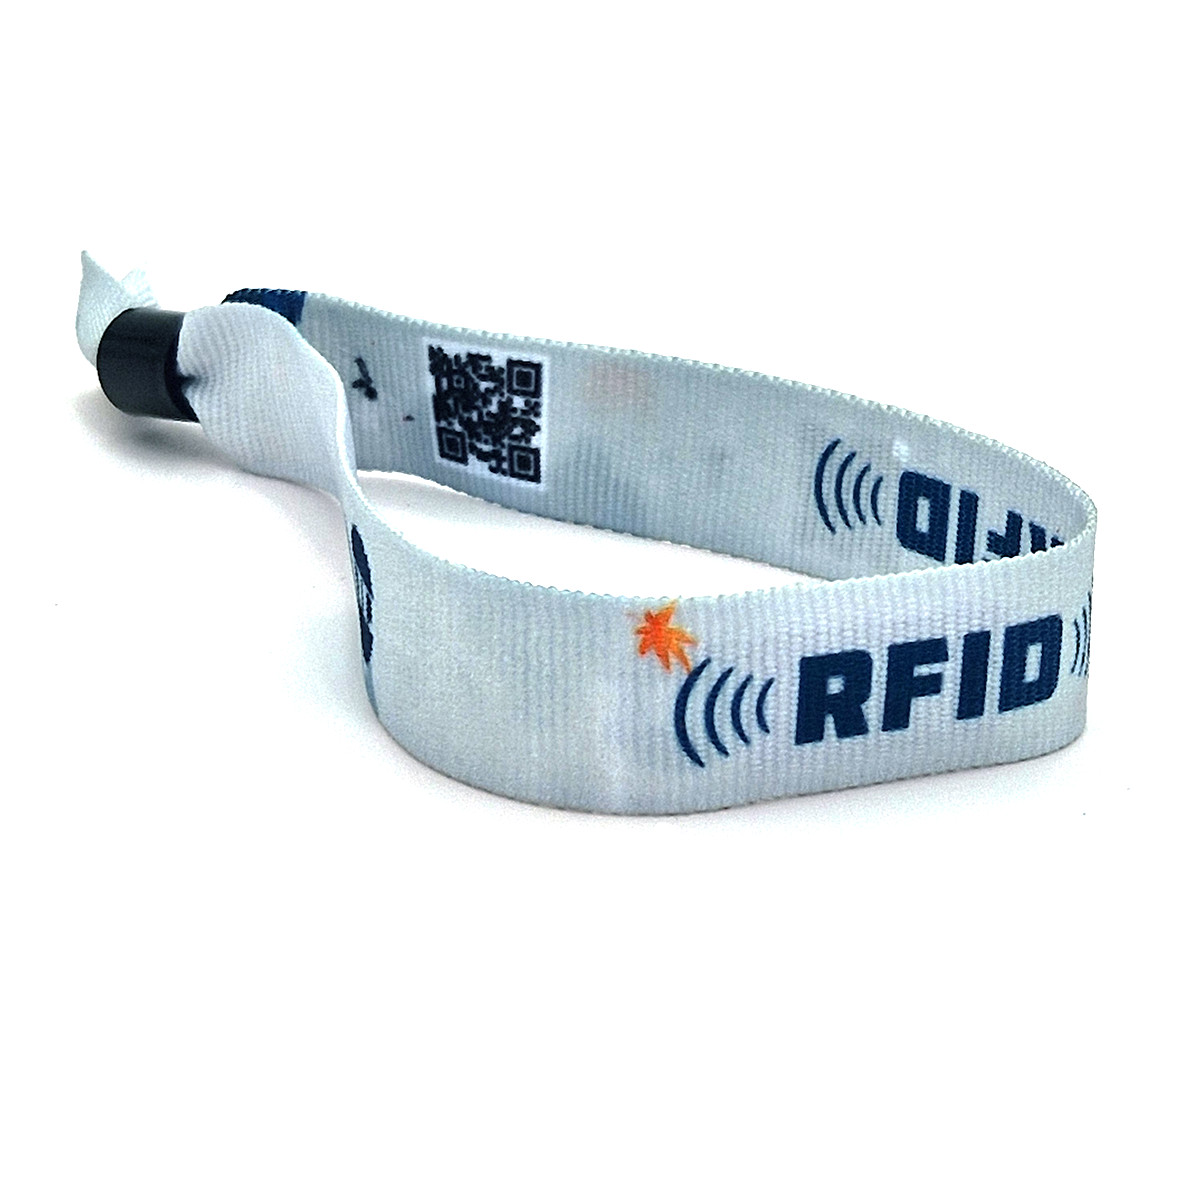 Einstellbares RFID Schnapparmband (Wristband) in versch. Farben mit  Wunschchip jetzt bestellen